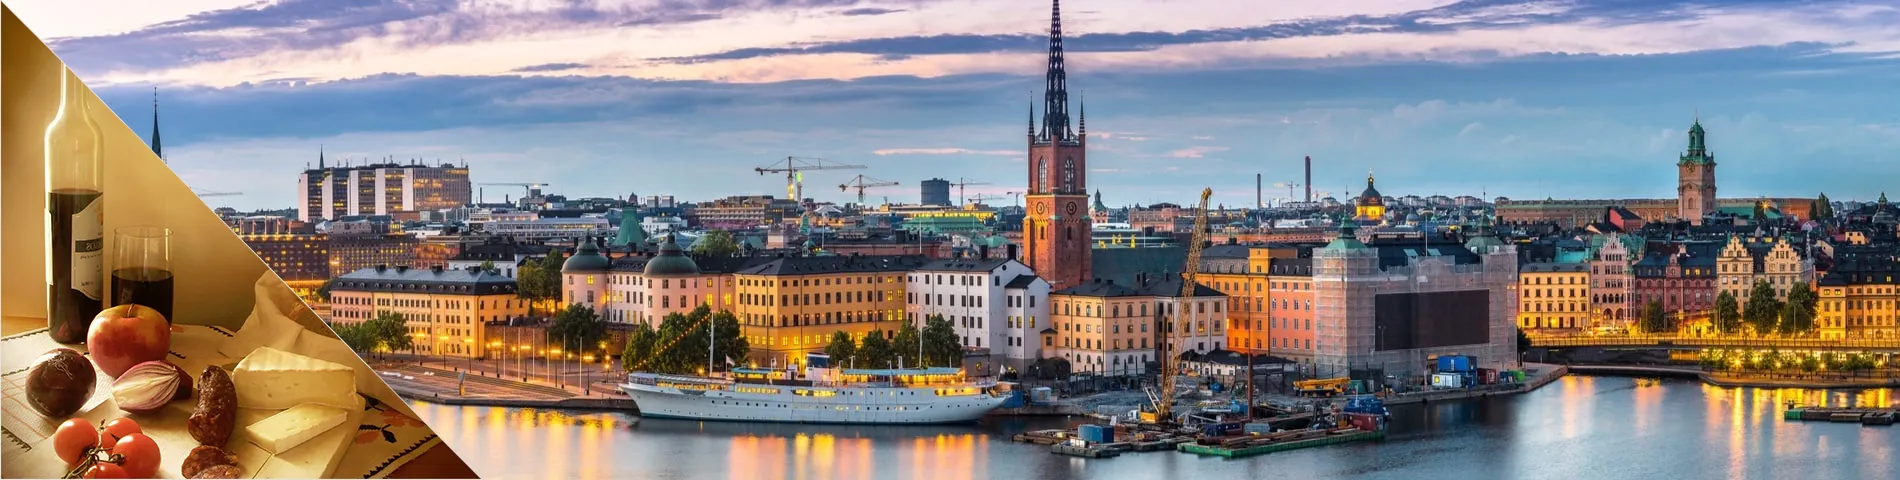 Štokholm - Švédčina a kultúra